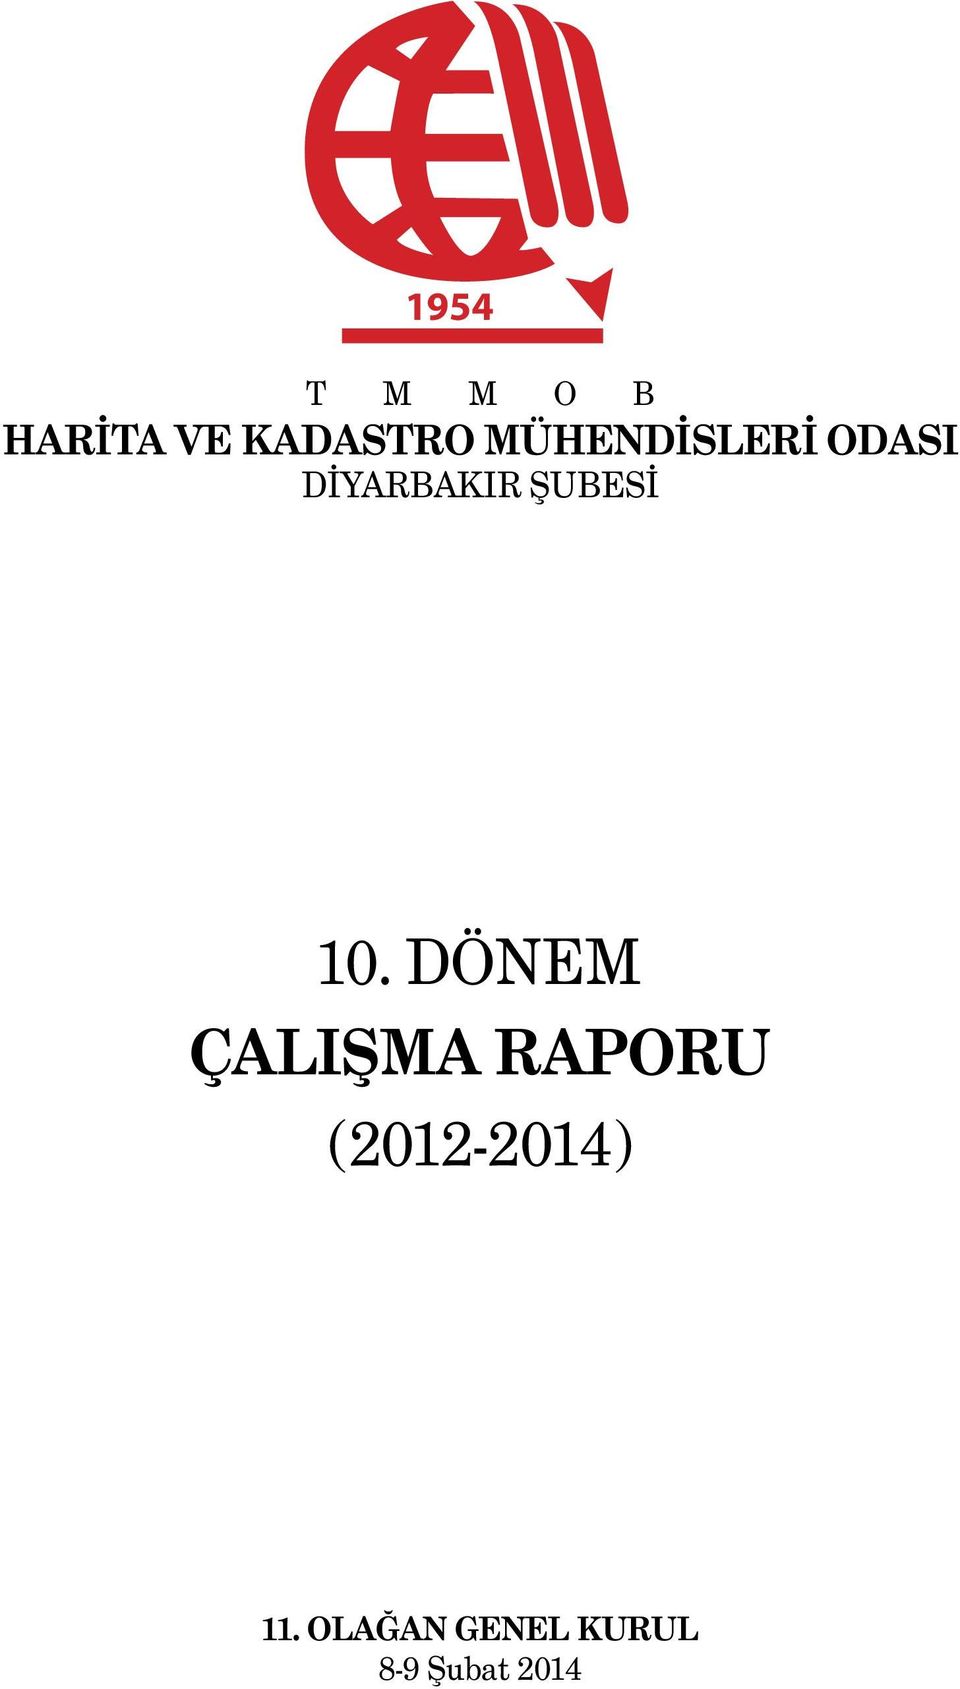 10. DÖNEM ÇALIŞMA RAPORU (2012-2014)